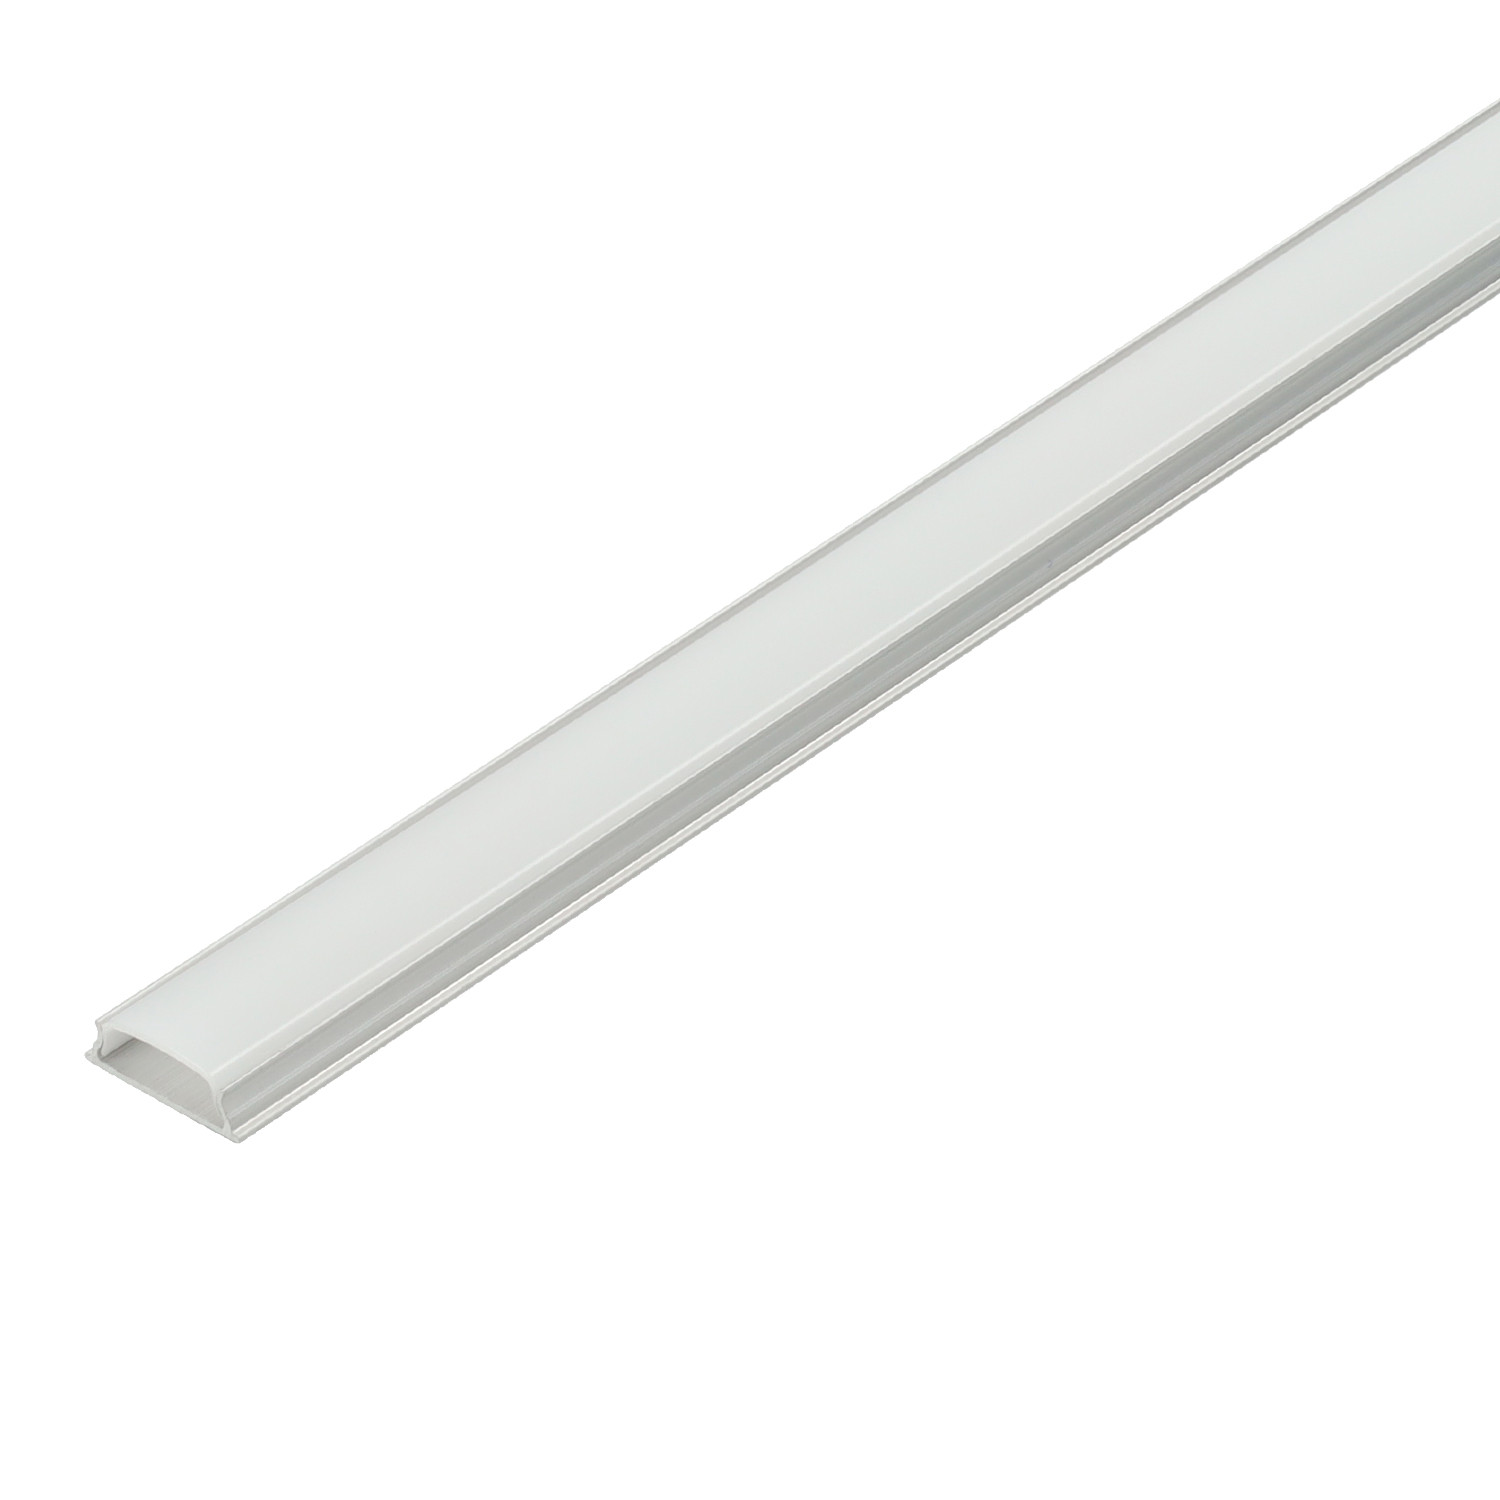 Bendable aluminium profile. 2m